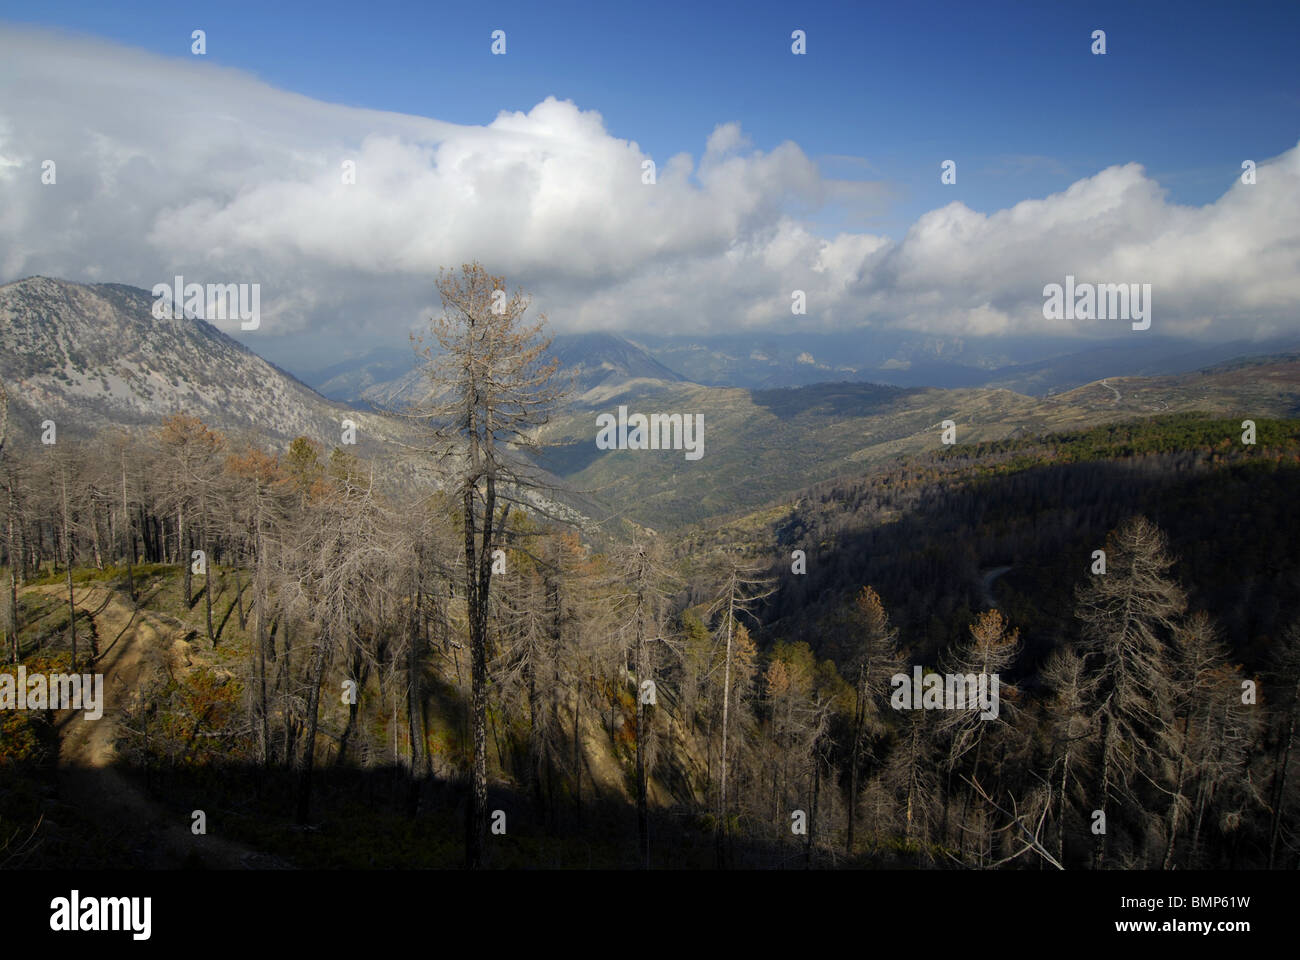 Los árboles muertos después de los incendios forestales en las montañas Taygetos, Grecia Foto de stock